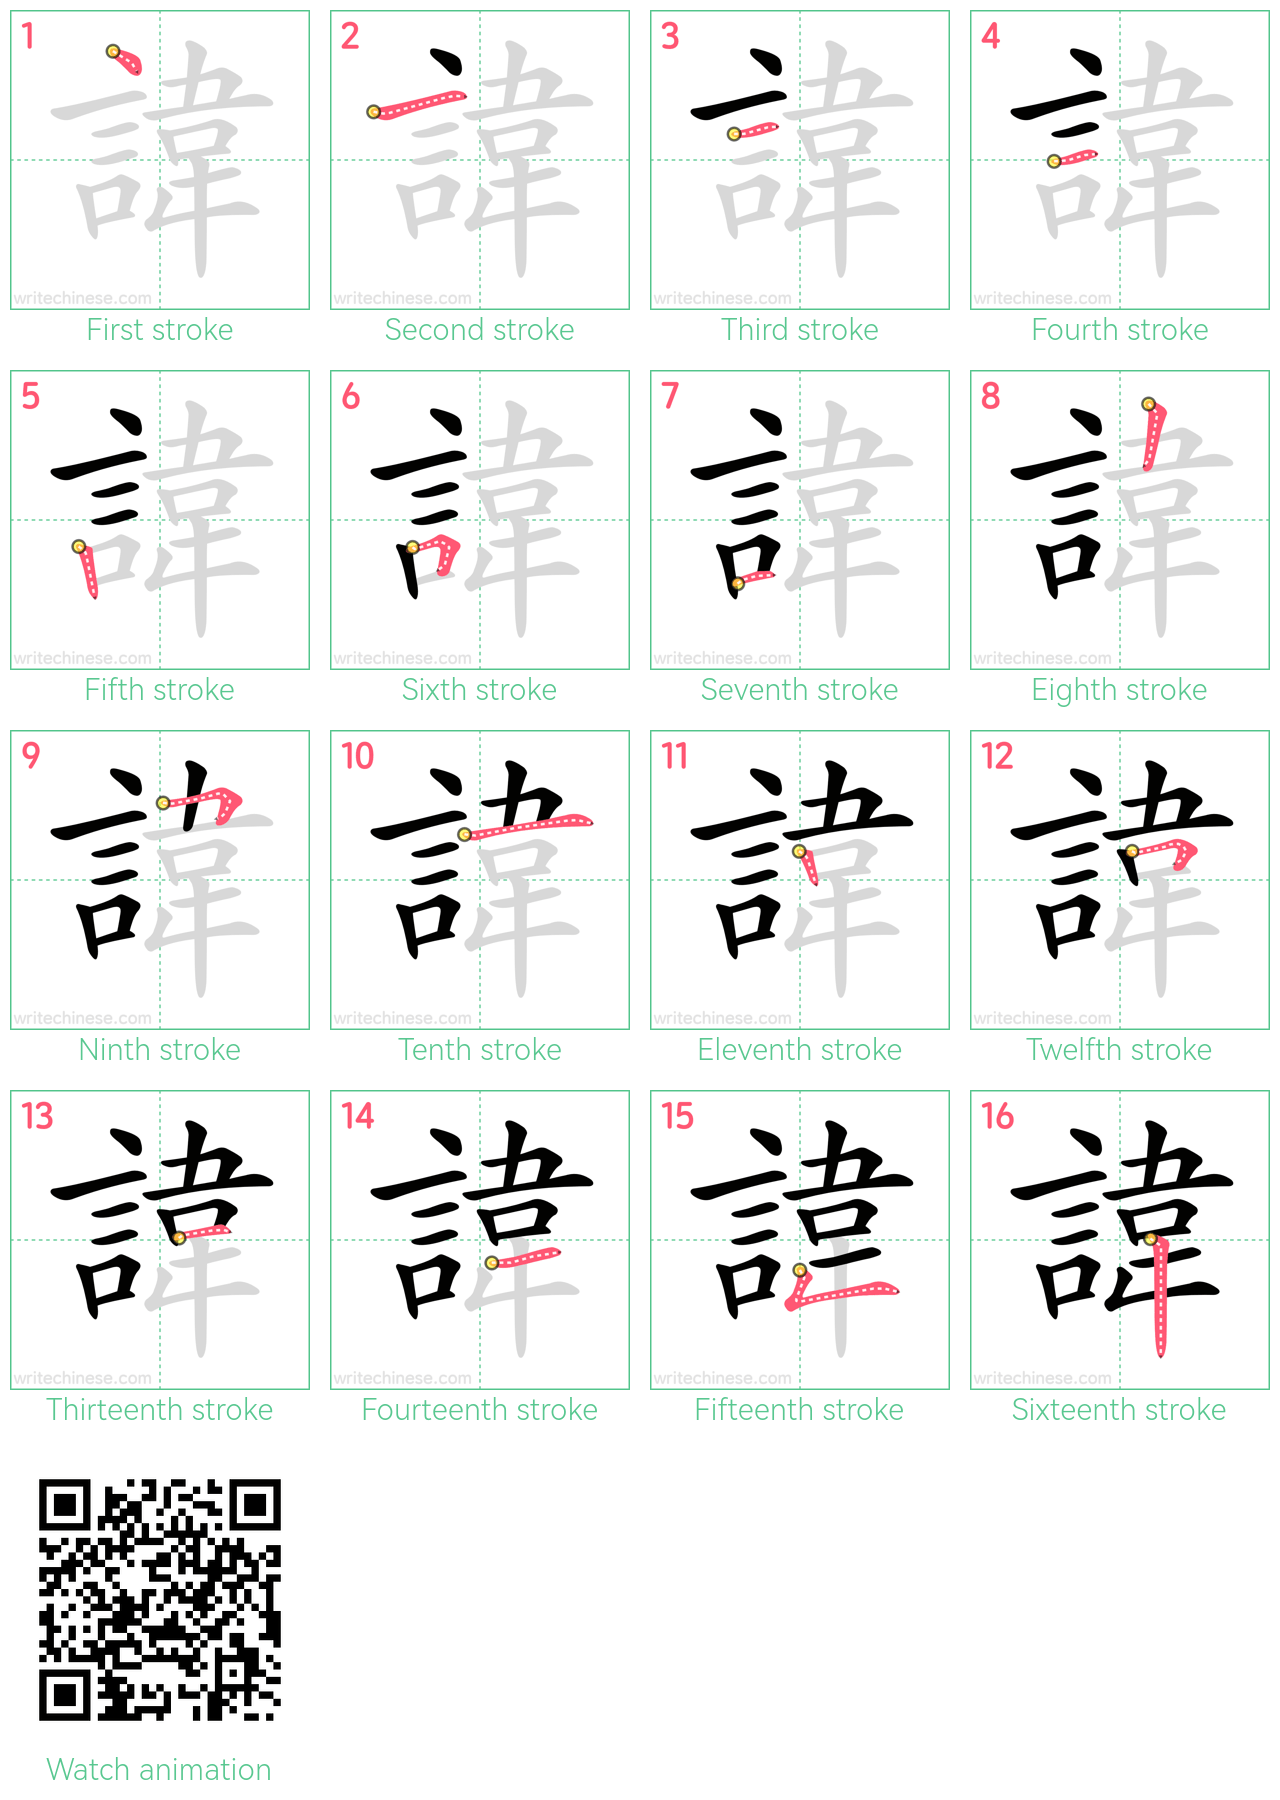 諱 step-by-step stroke order diagrams